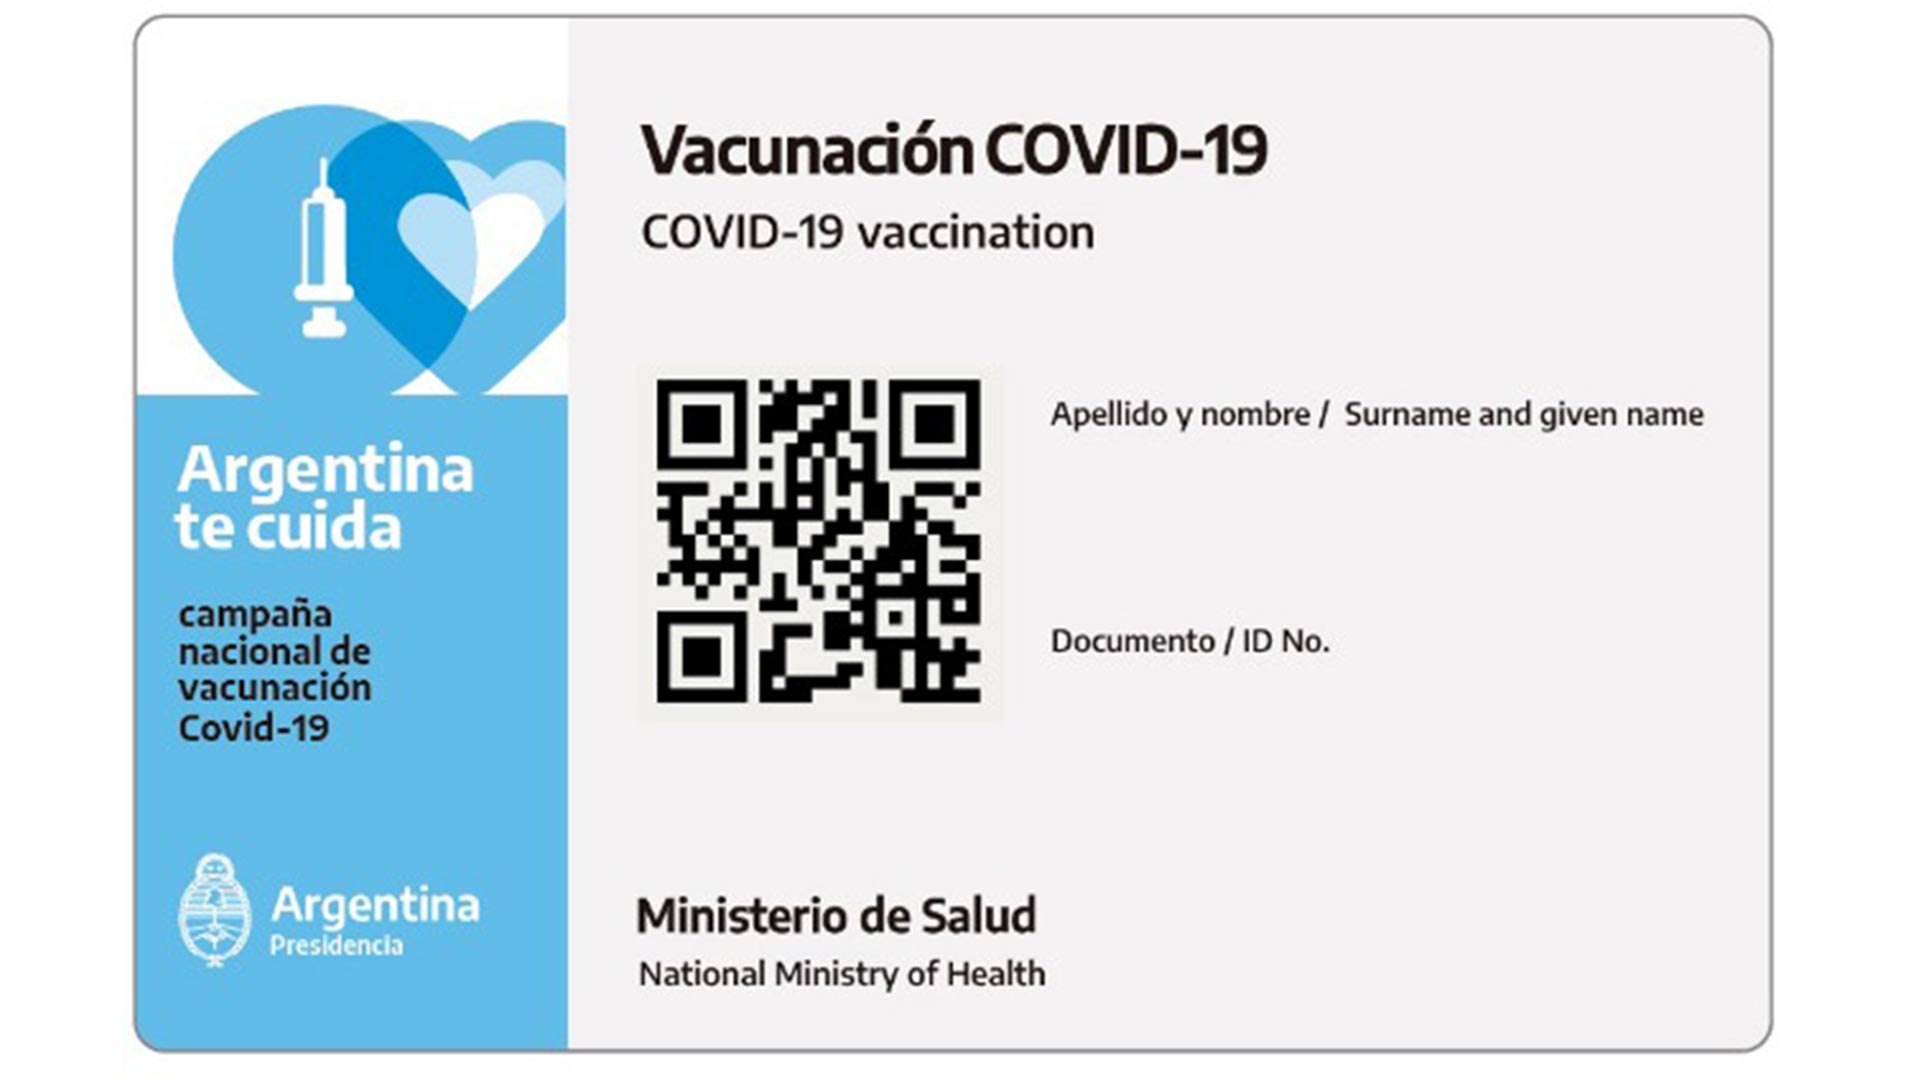 El certificado de vacunación puede descargarse para llevarlo de manera digital (Ministerio de Salud)